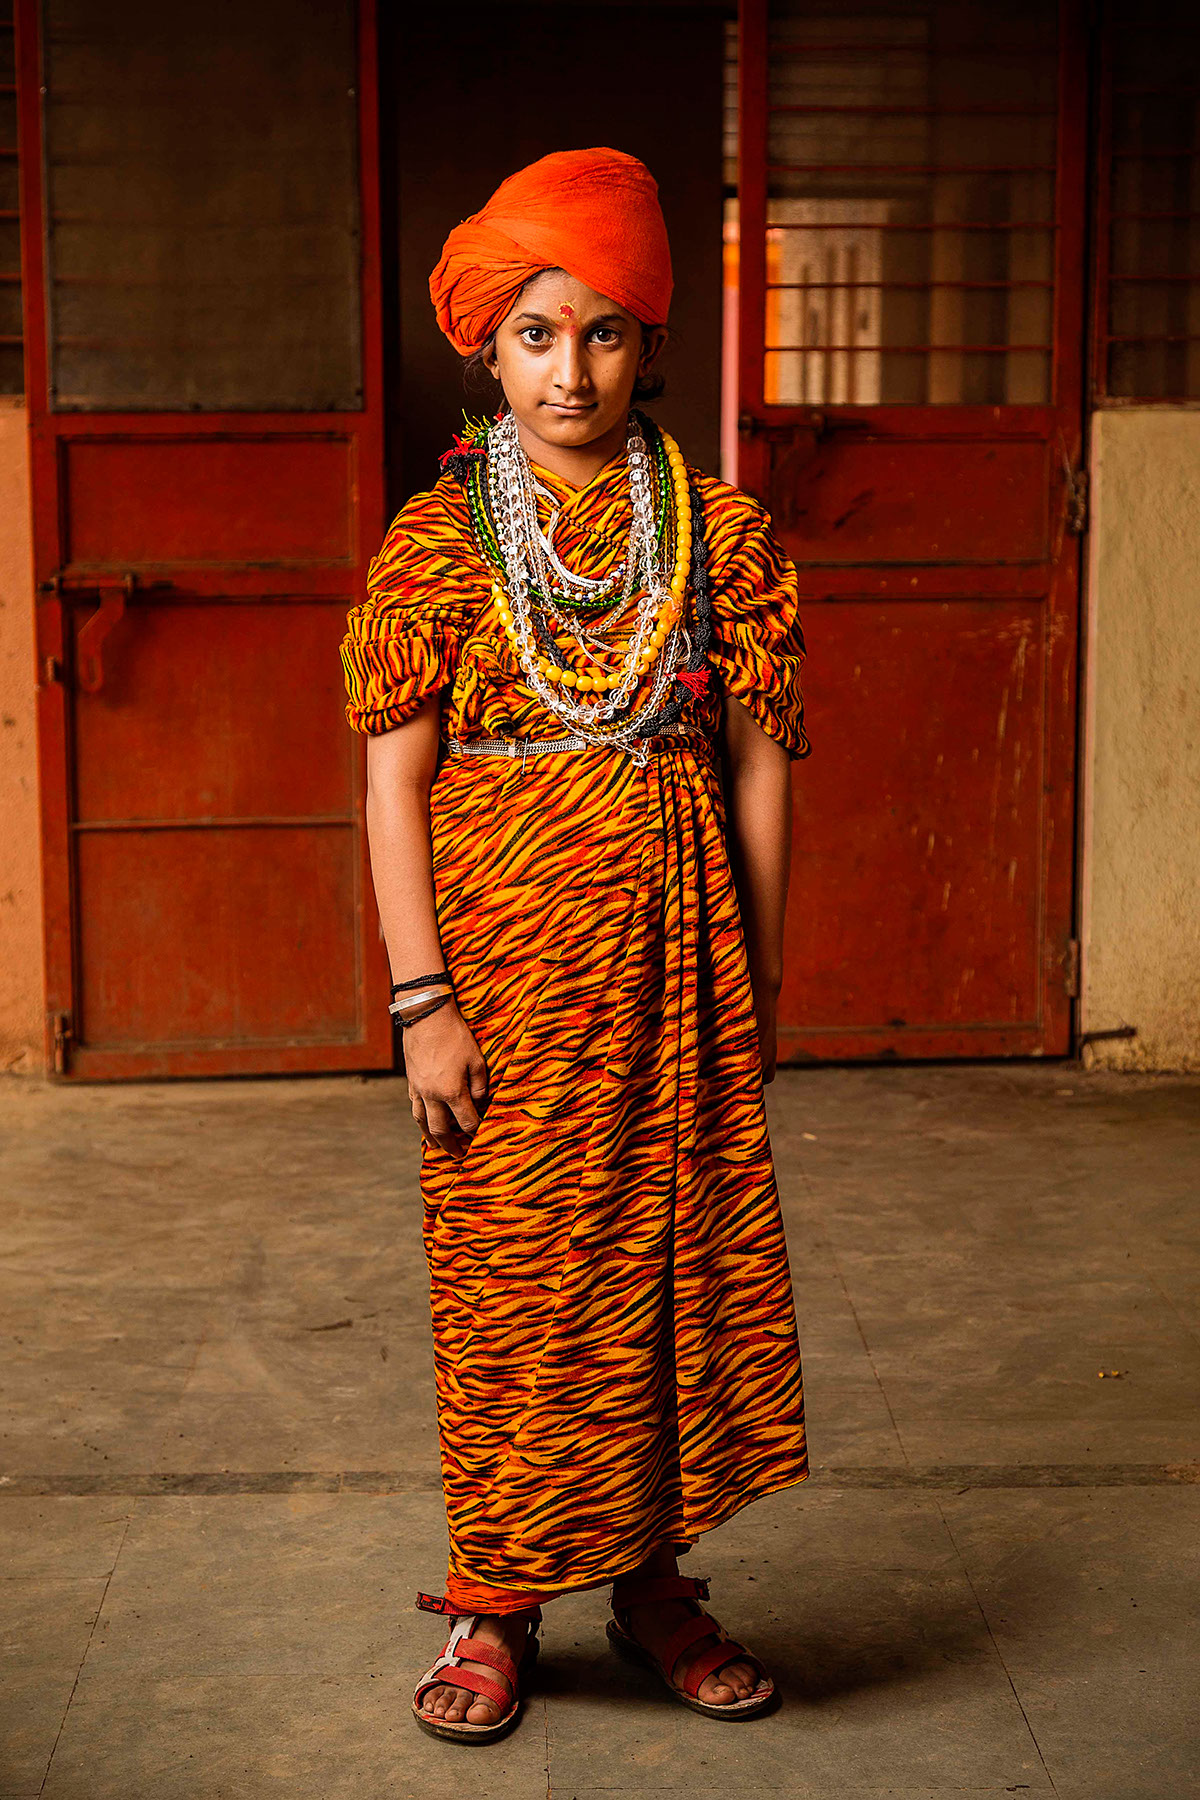 Documentry Photojournaslim Kumbh Mela  201 India Indian Saint sadhu